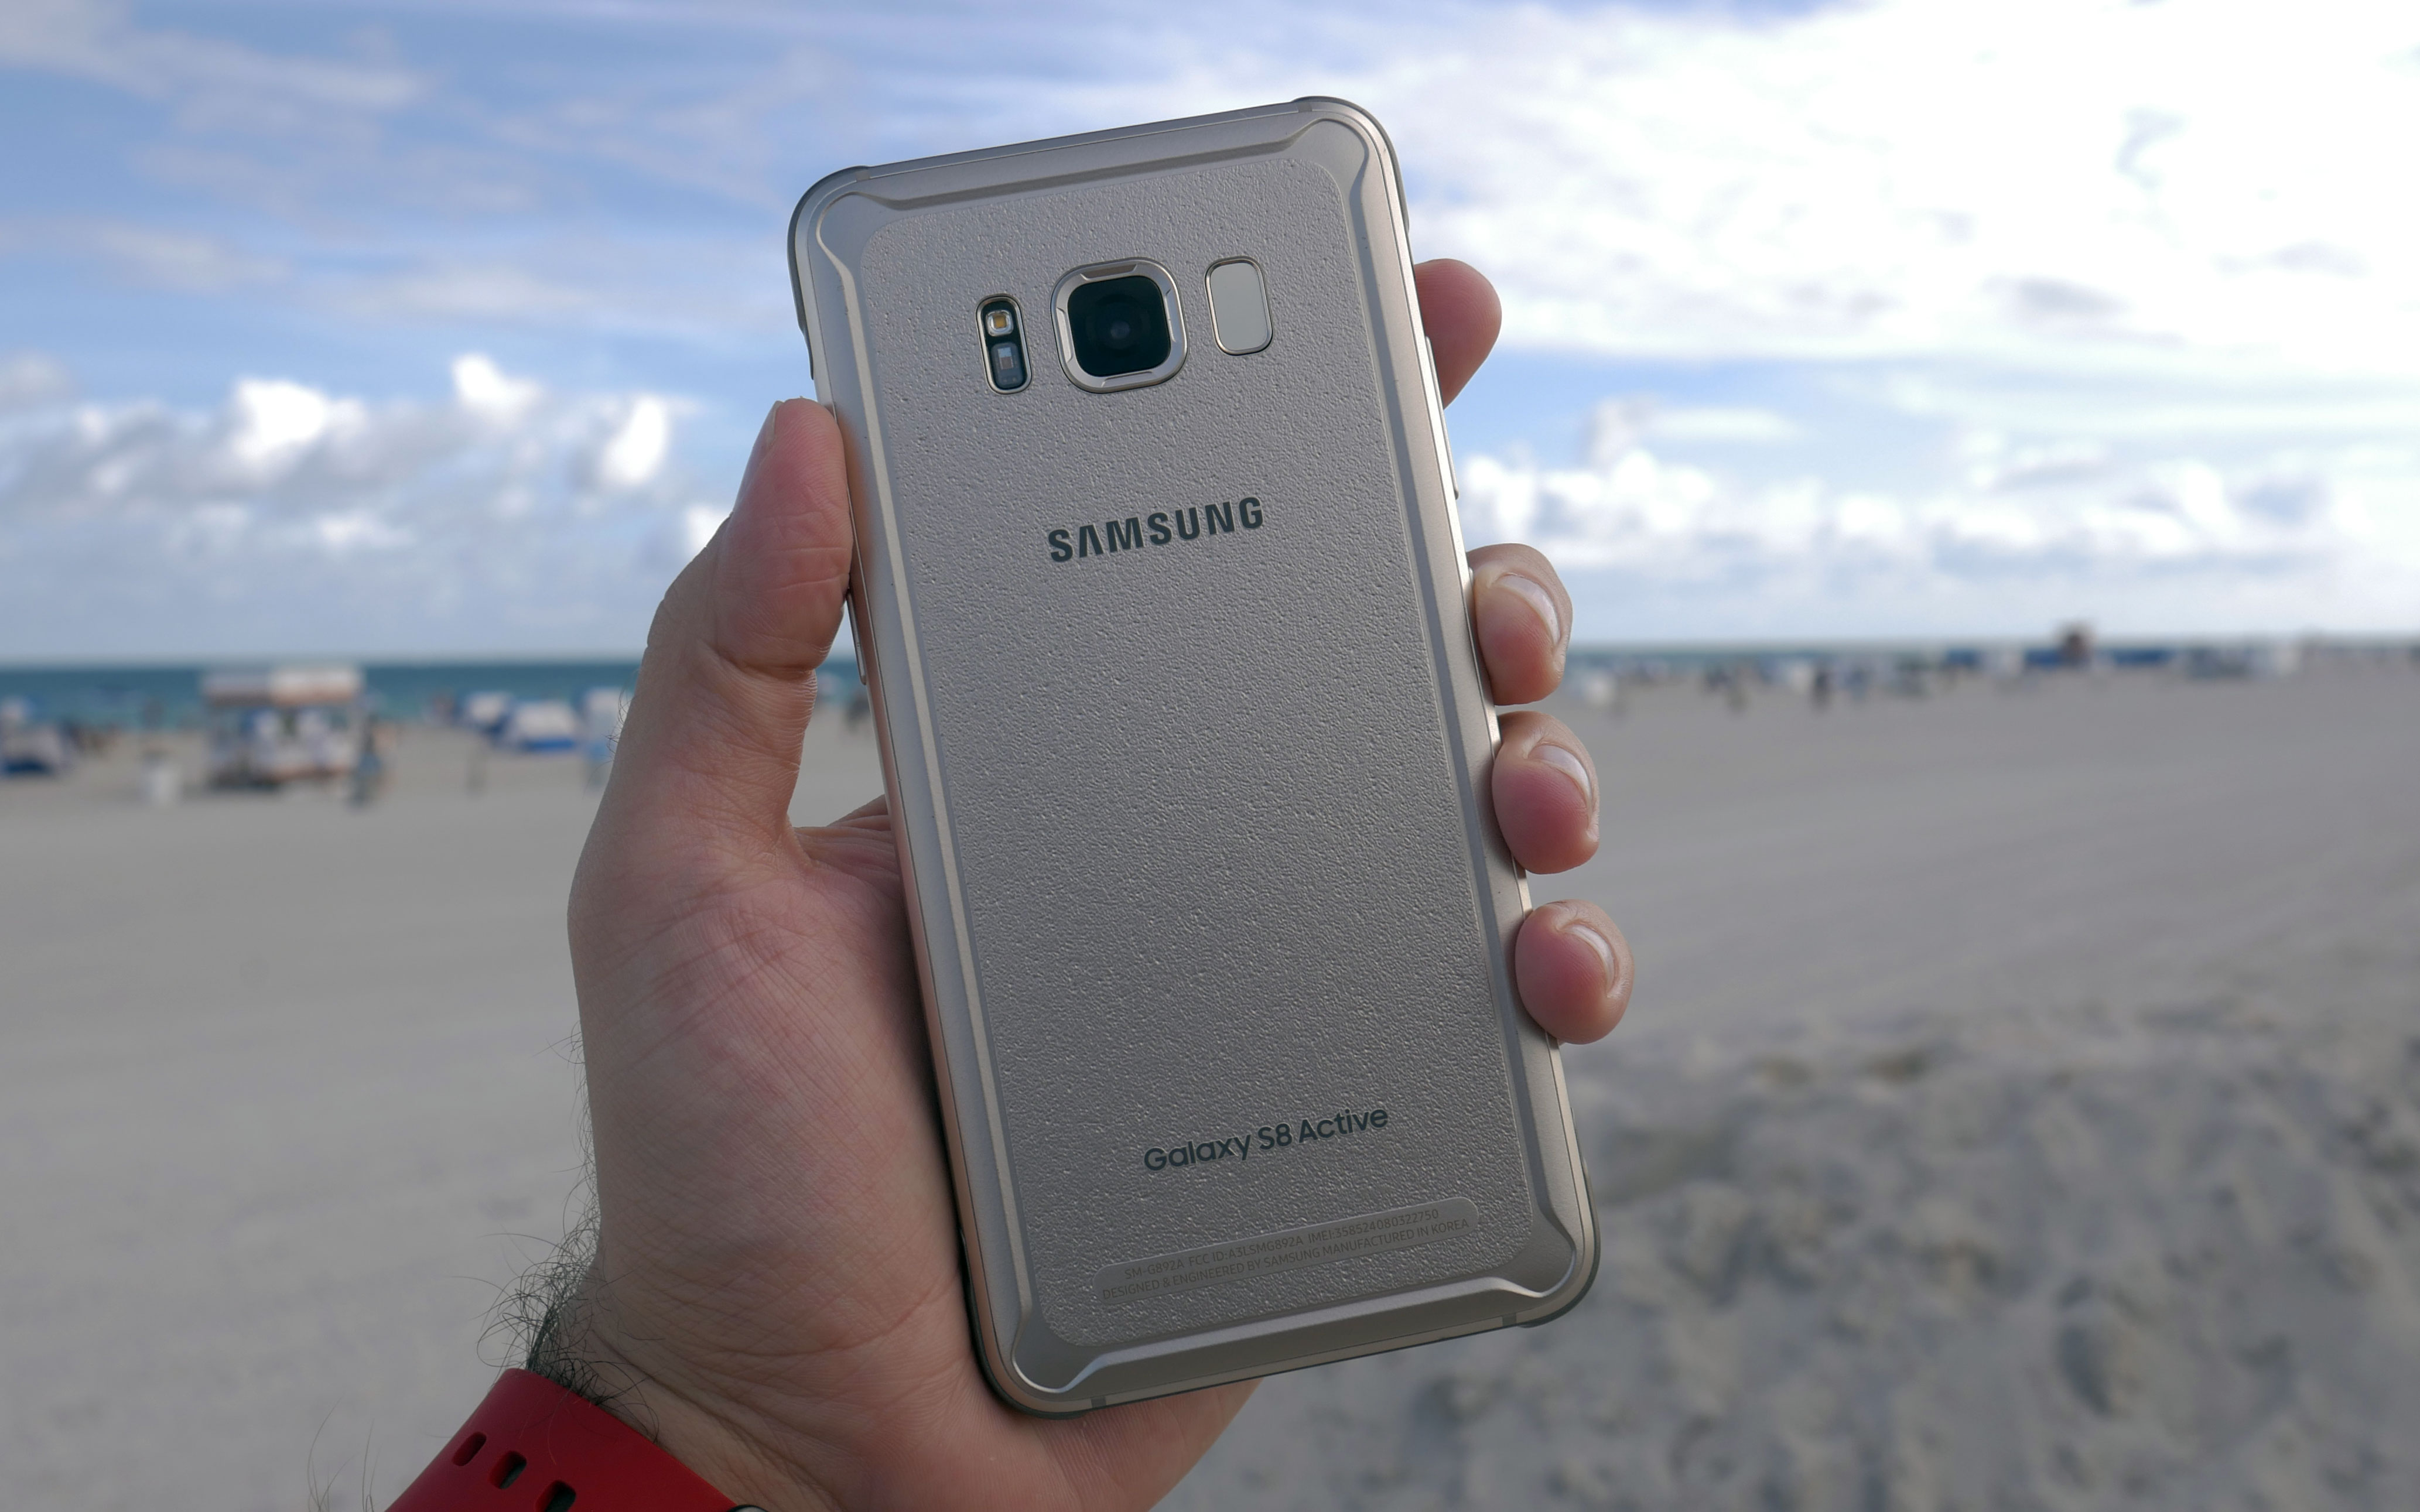 Актив 8 про. Samsung s8 Active. Самсунг галакси с8 Актив. Телефон Samsung Galaxy s8 Active. Samsung Galaxy s8 Active характеристики.